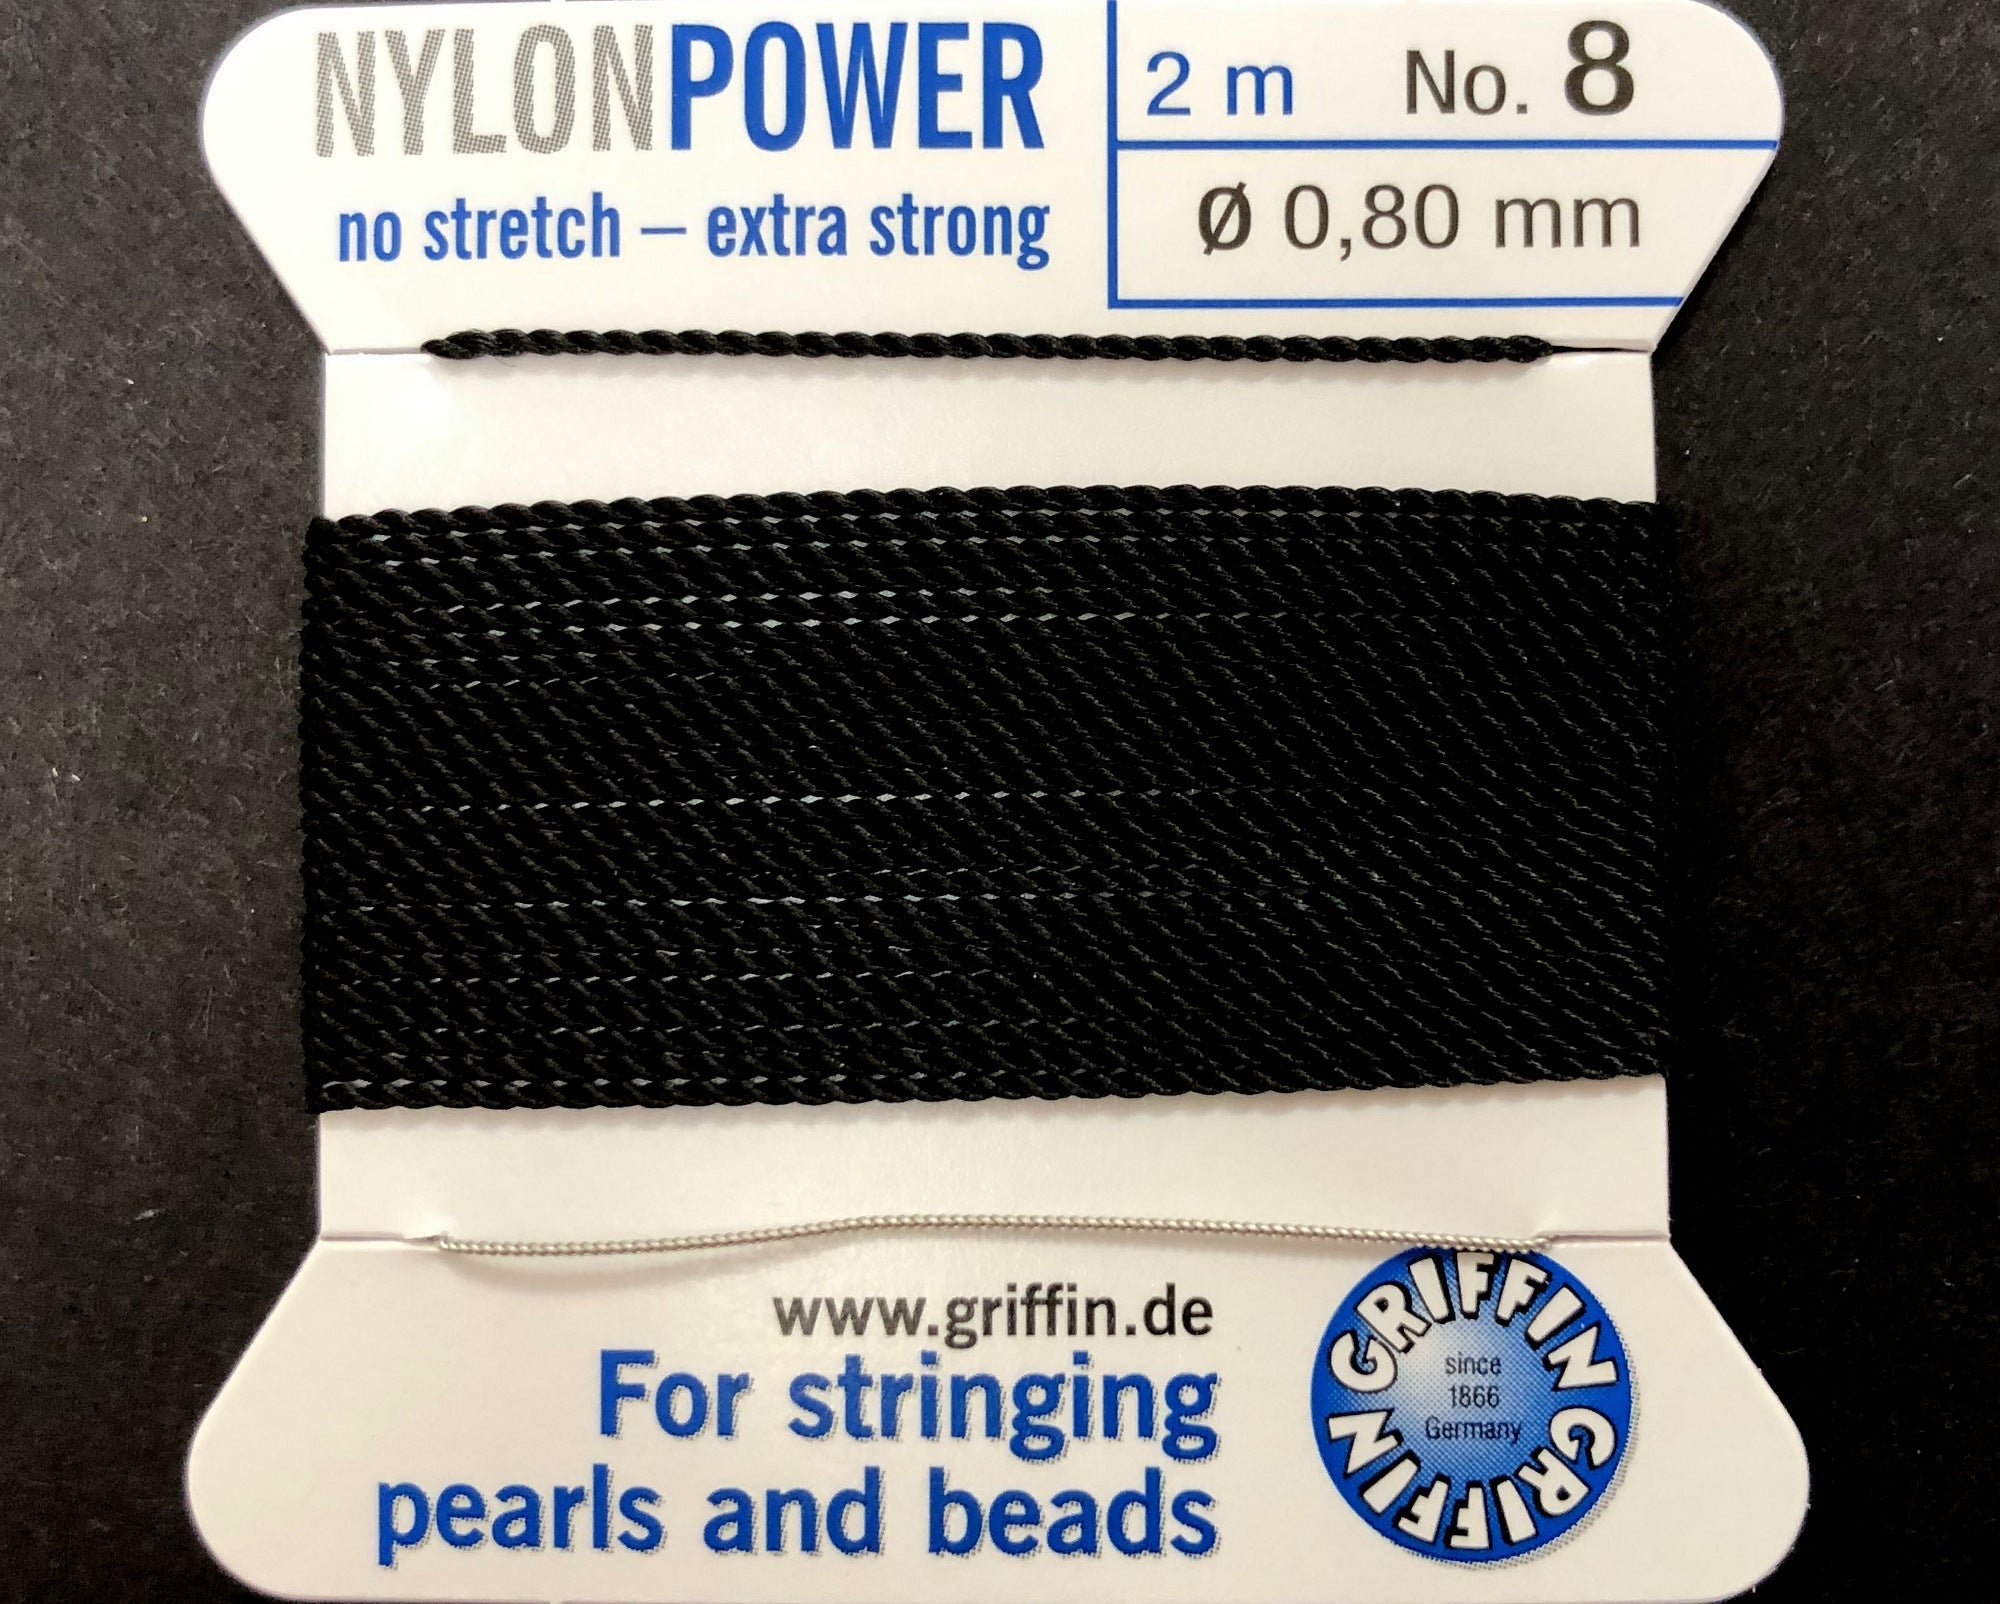 Fil nylon invisible 0.60 mm - illusion cord - Griffin